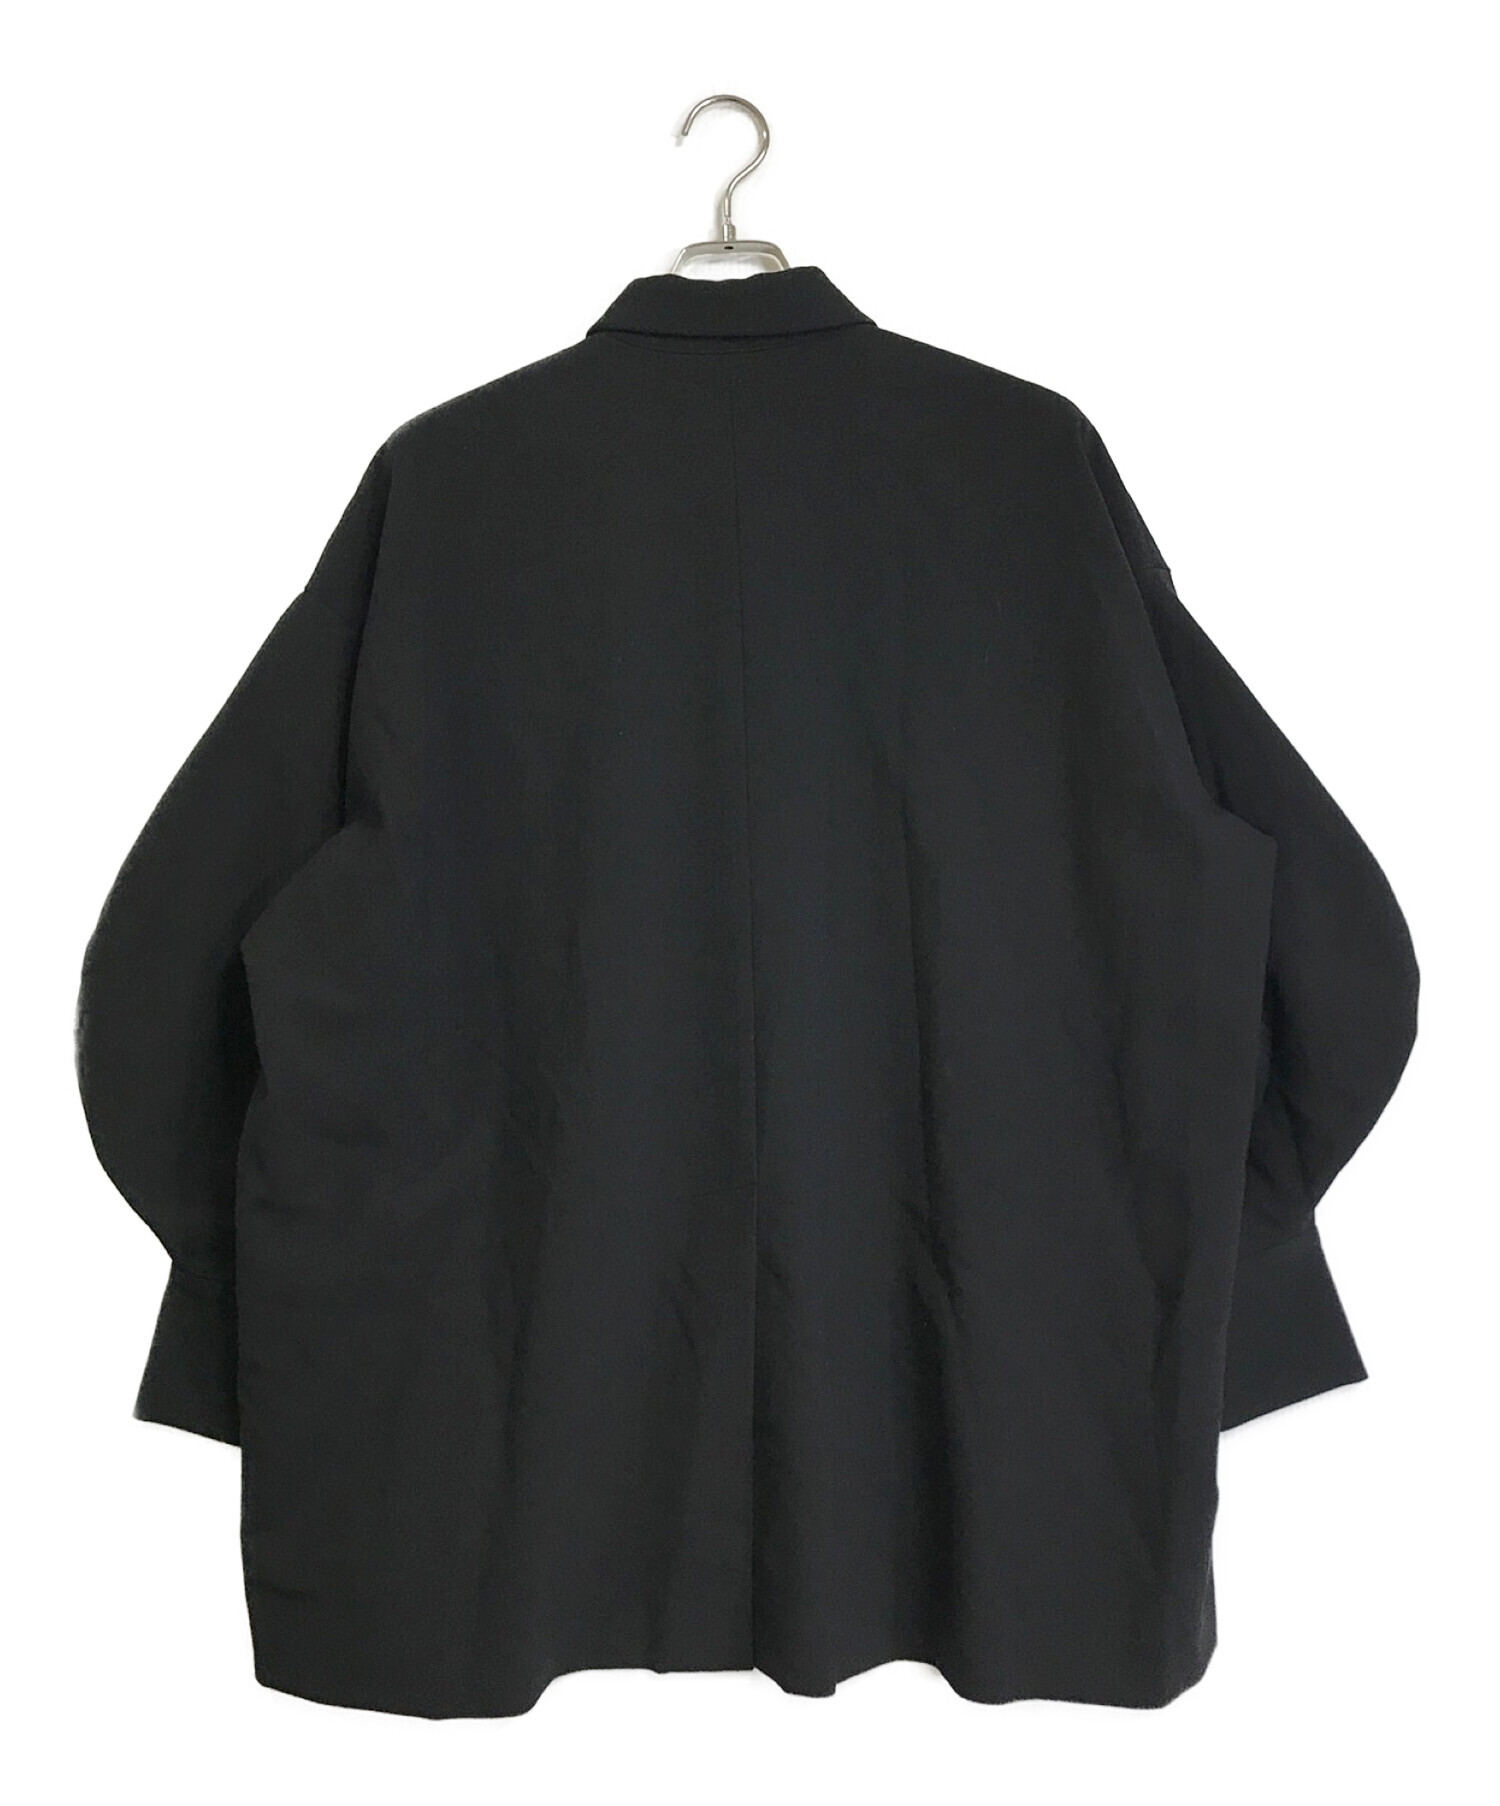 ENFOLD (エンフォルド) ダブルクロスカーブアームポロシャツ 300FS230-0330 ブラック サイズ:38